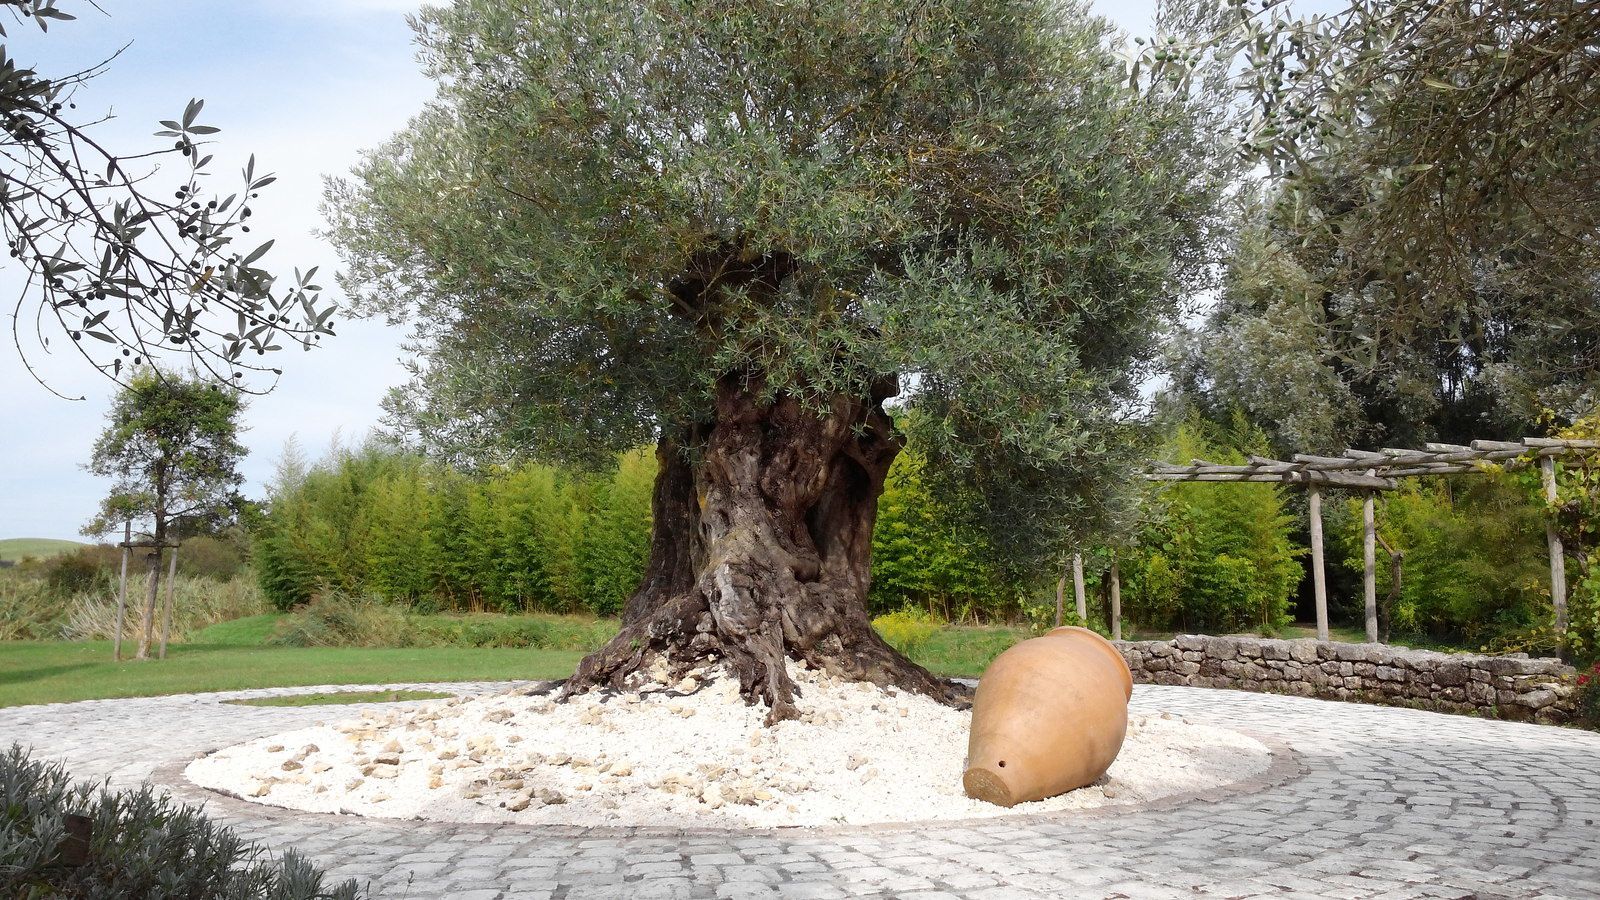 Cet olivier est estimé à plus de 1800 ans d'âge.